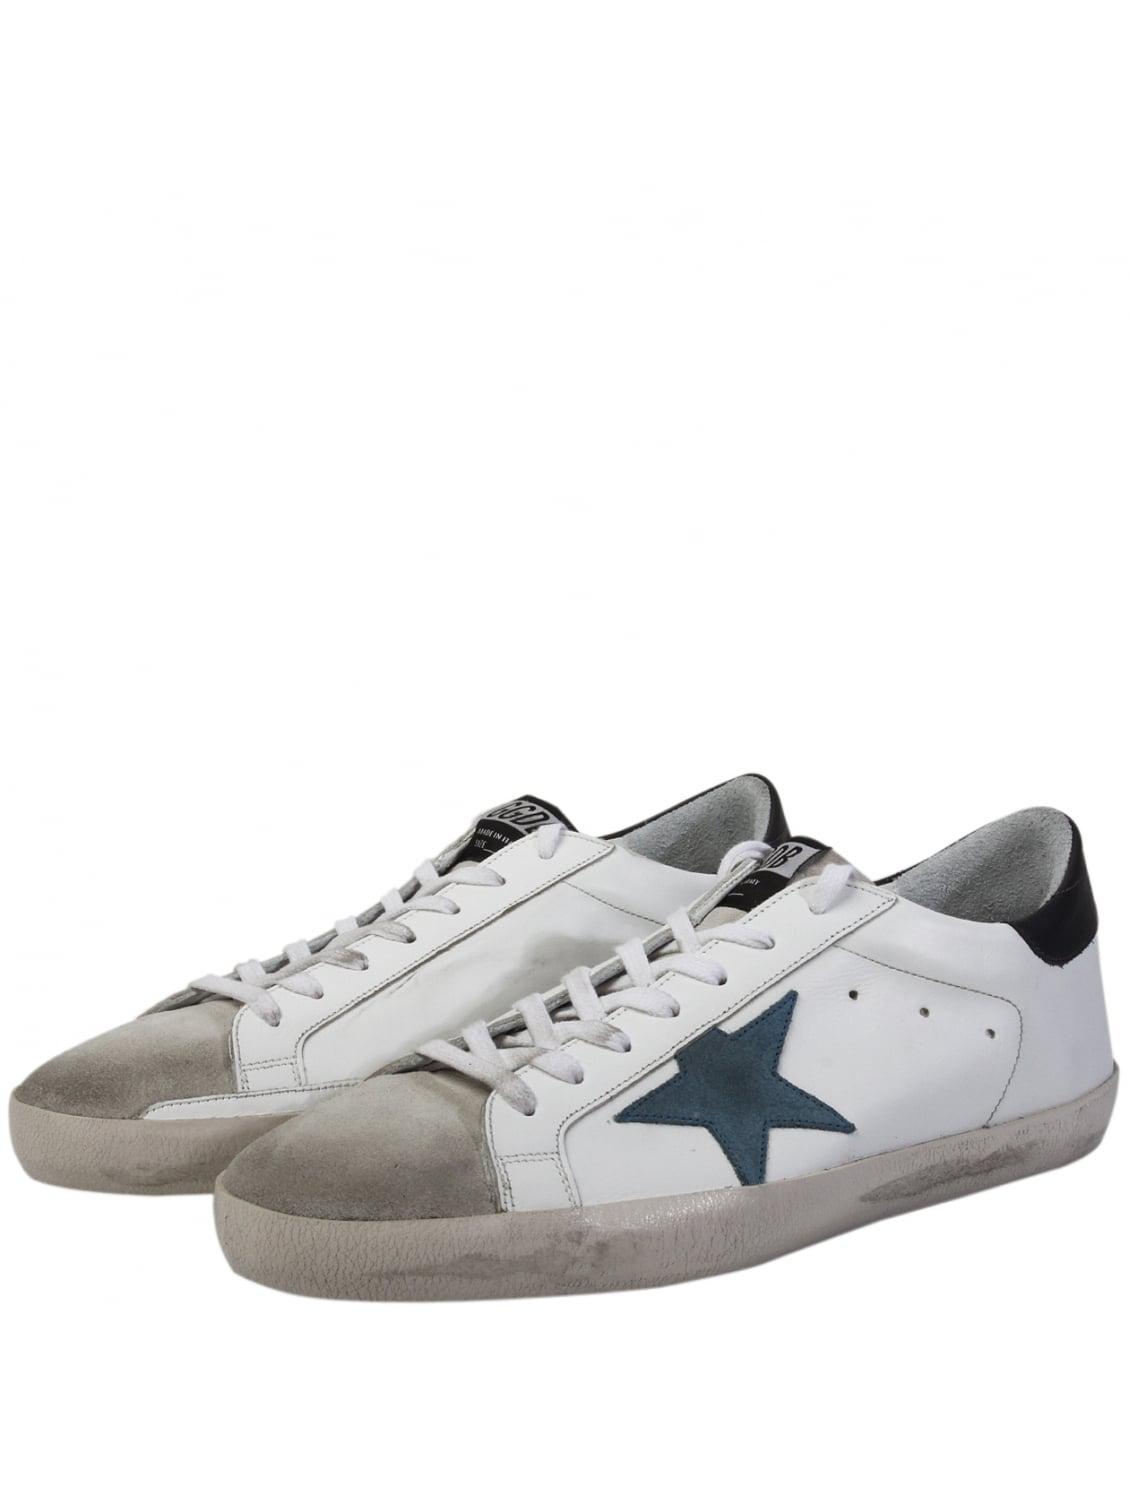 Golden Goose Men's Superstar Blue Star Sneakers White for Men | Lyst